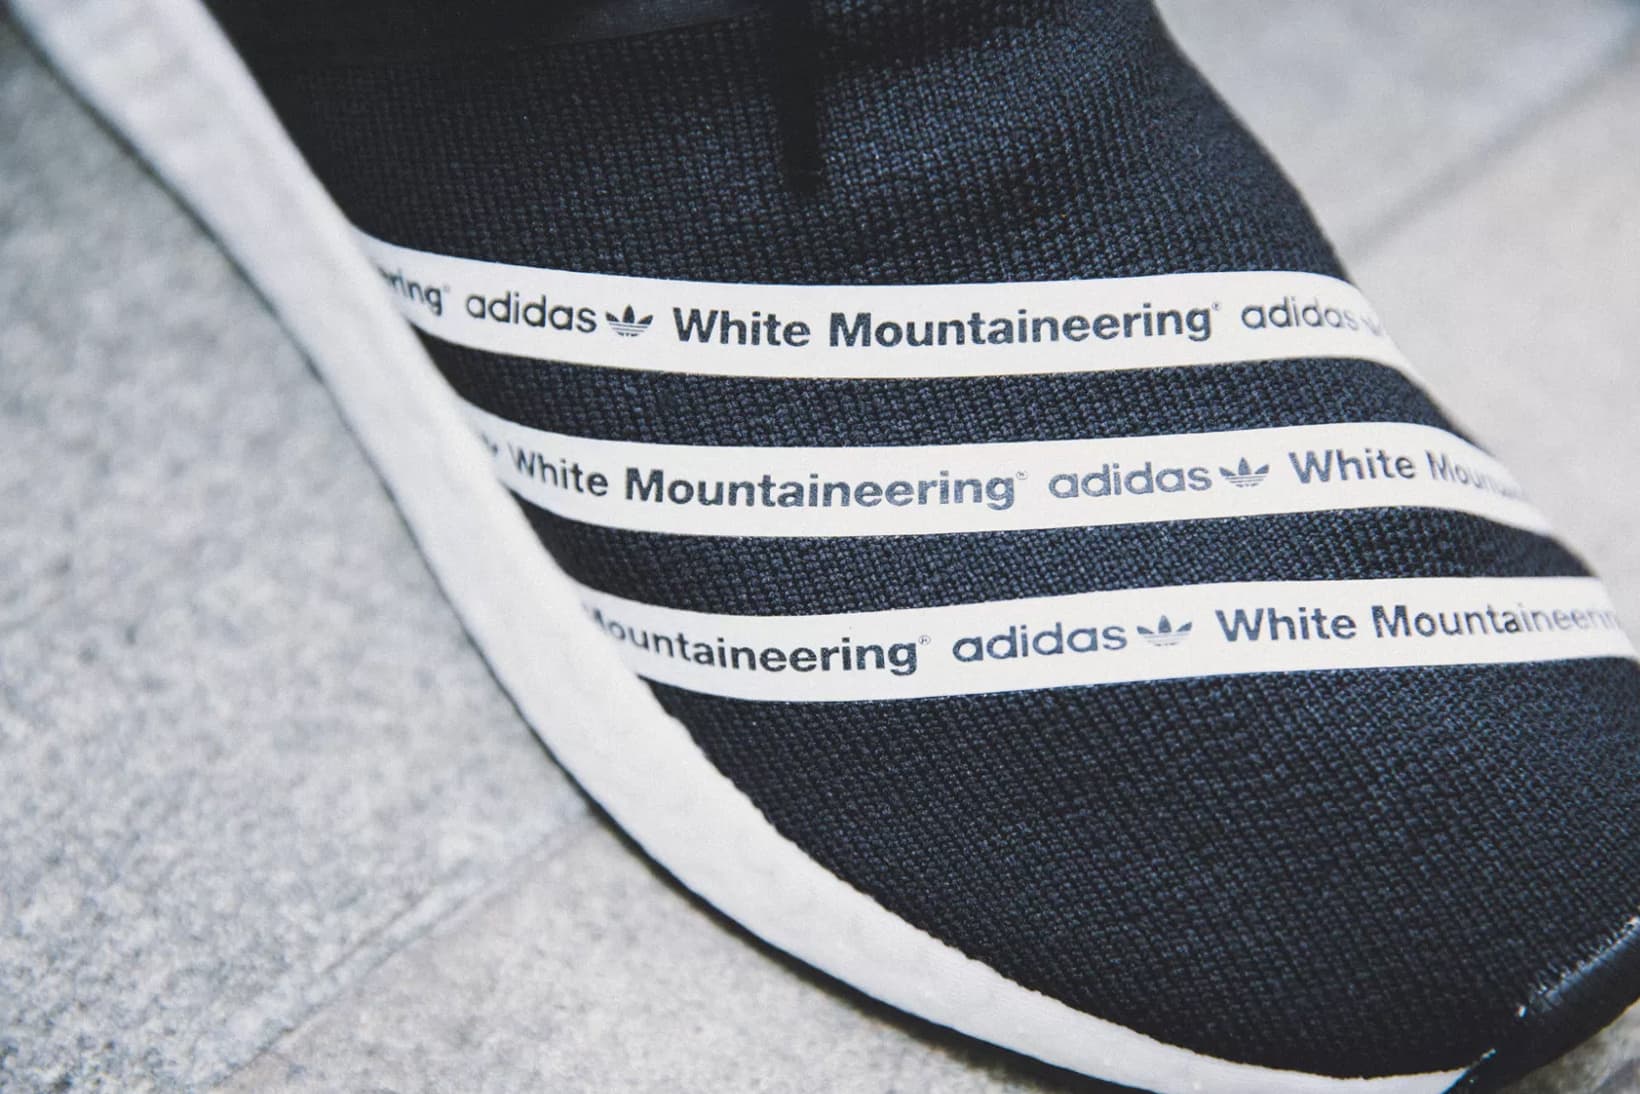 아디다스 오리지널스 x 화이트 마운티니어링 SS17 스니커즈 샷(adidas Originals x White Mountaineering SS17 Footwear Collection) 8